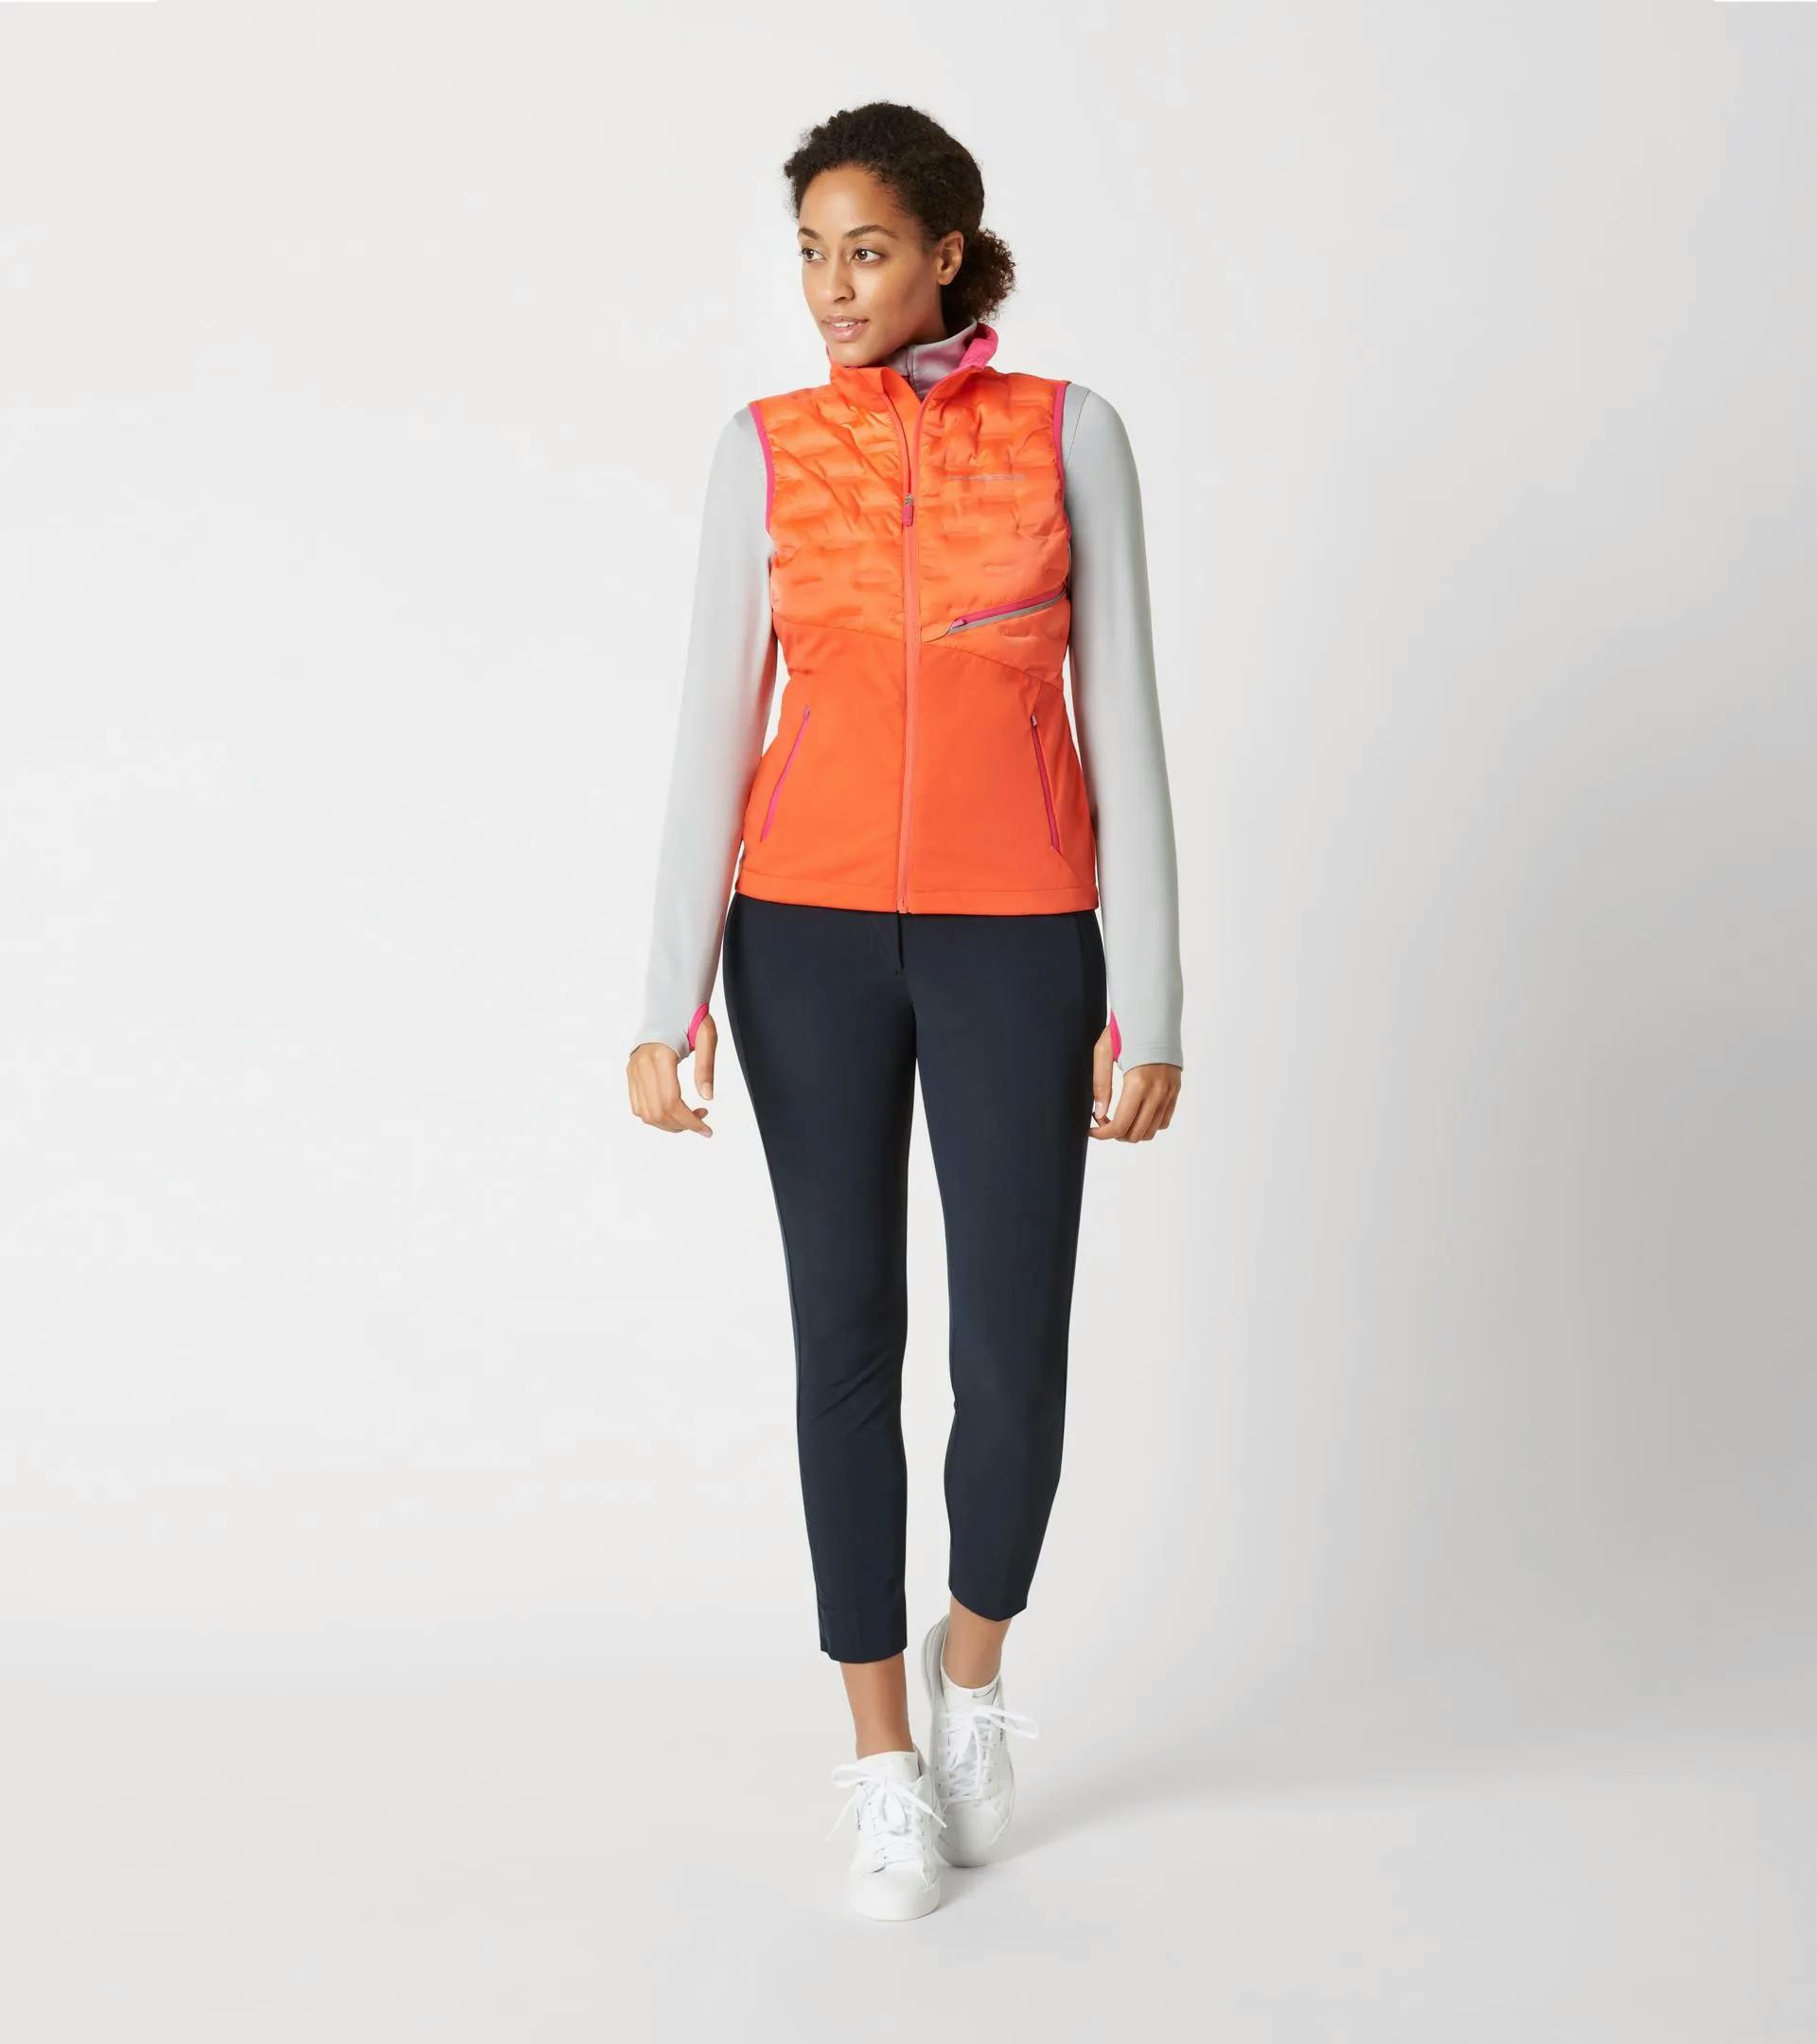 Women's vest – Sport 5